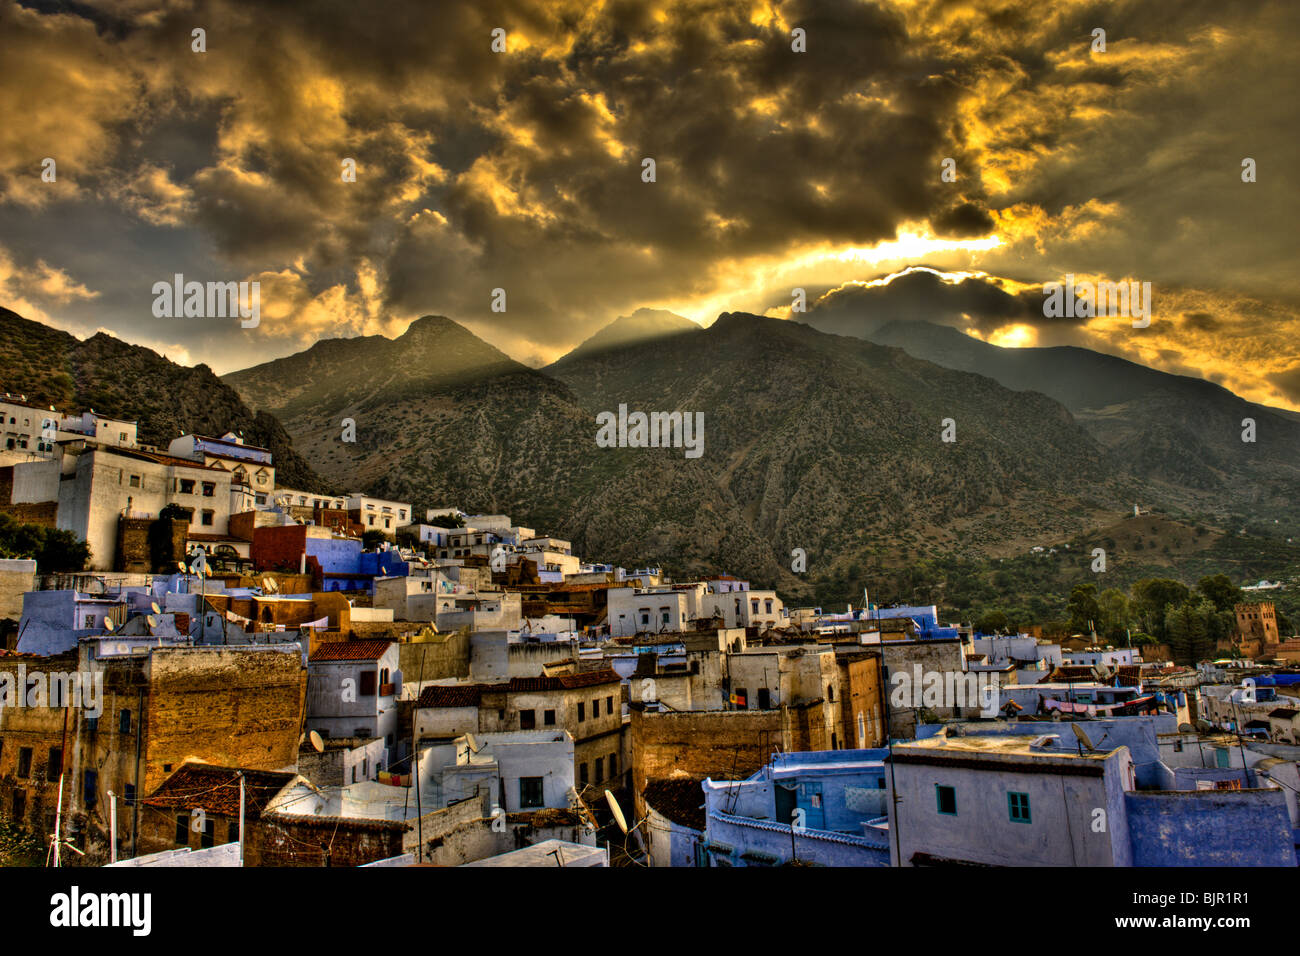 Il s'agit d'une image de la ville de montagne de Chefchaouen au Maroc. Banque D'Images